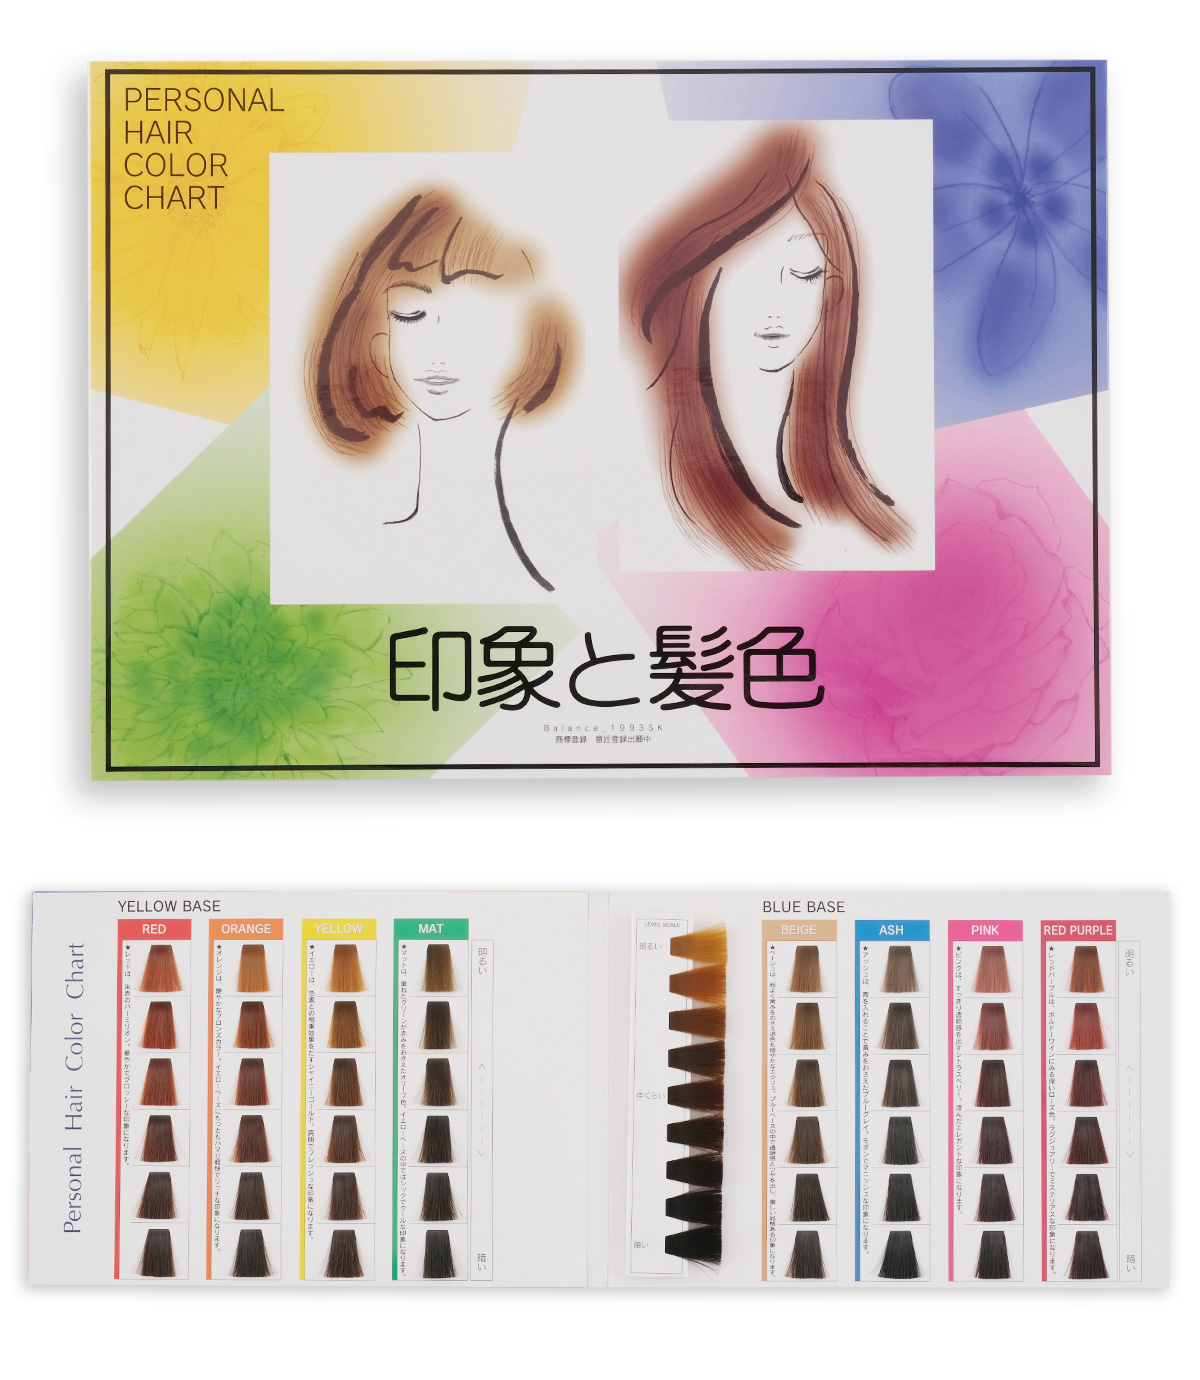 ヘアカラーチャート パーソナル ヘアカラー チャート 印象と髪色 Npo法人日本パーソナルカラー協会